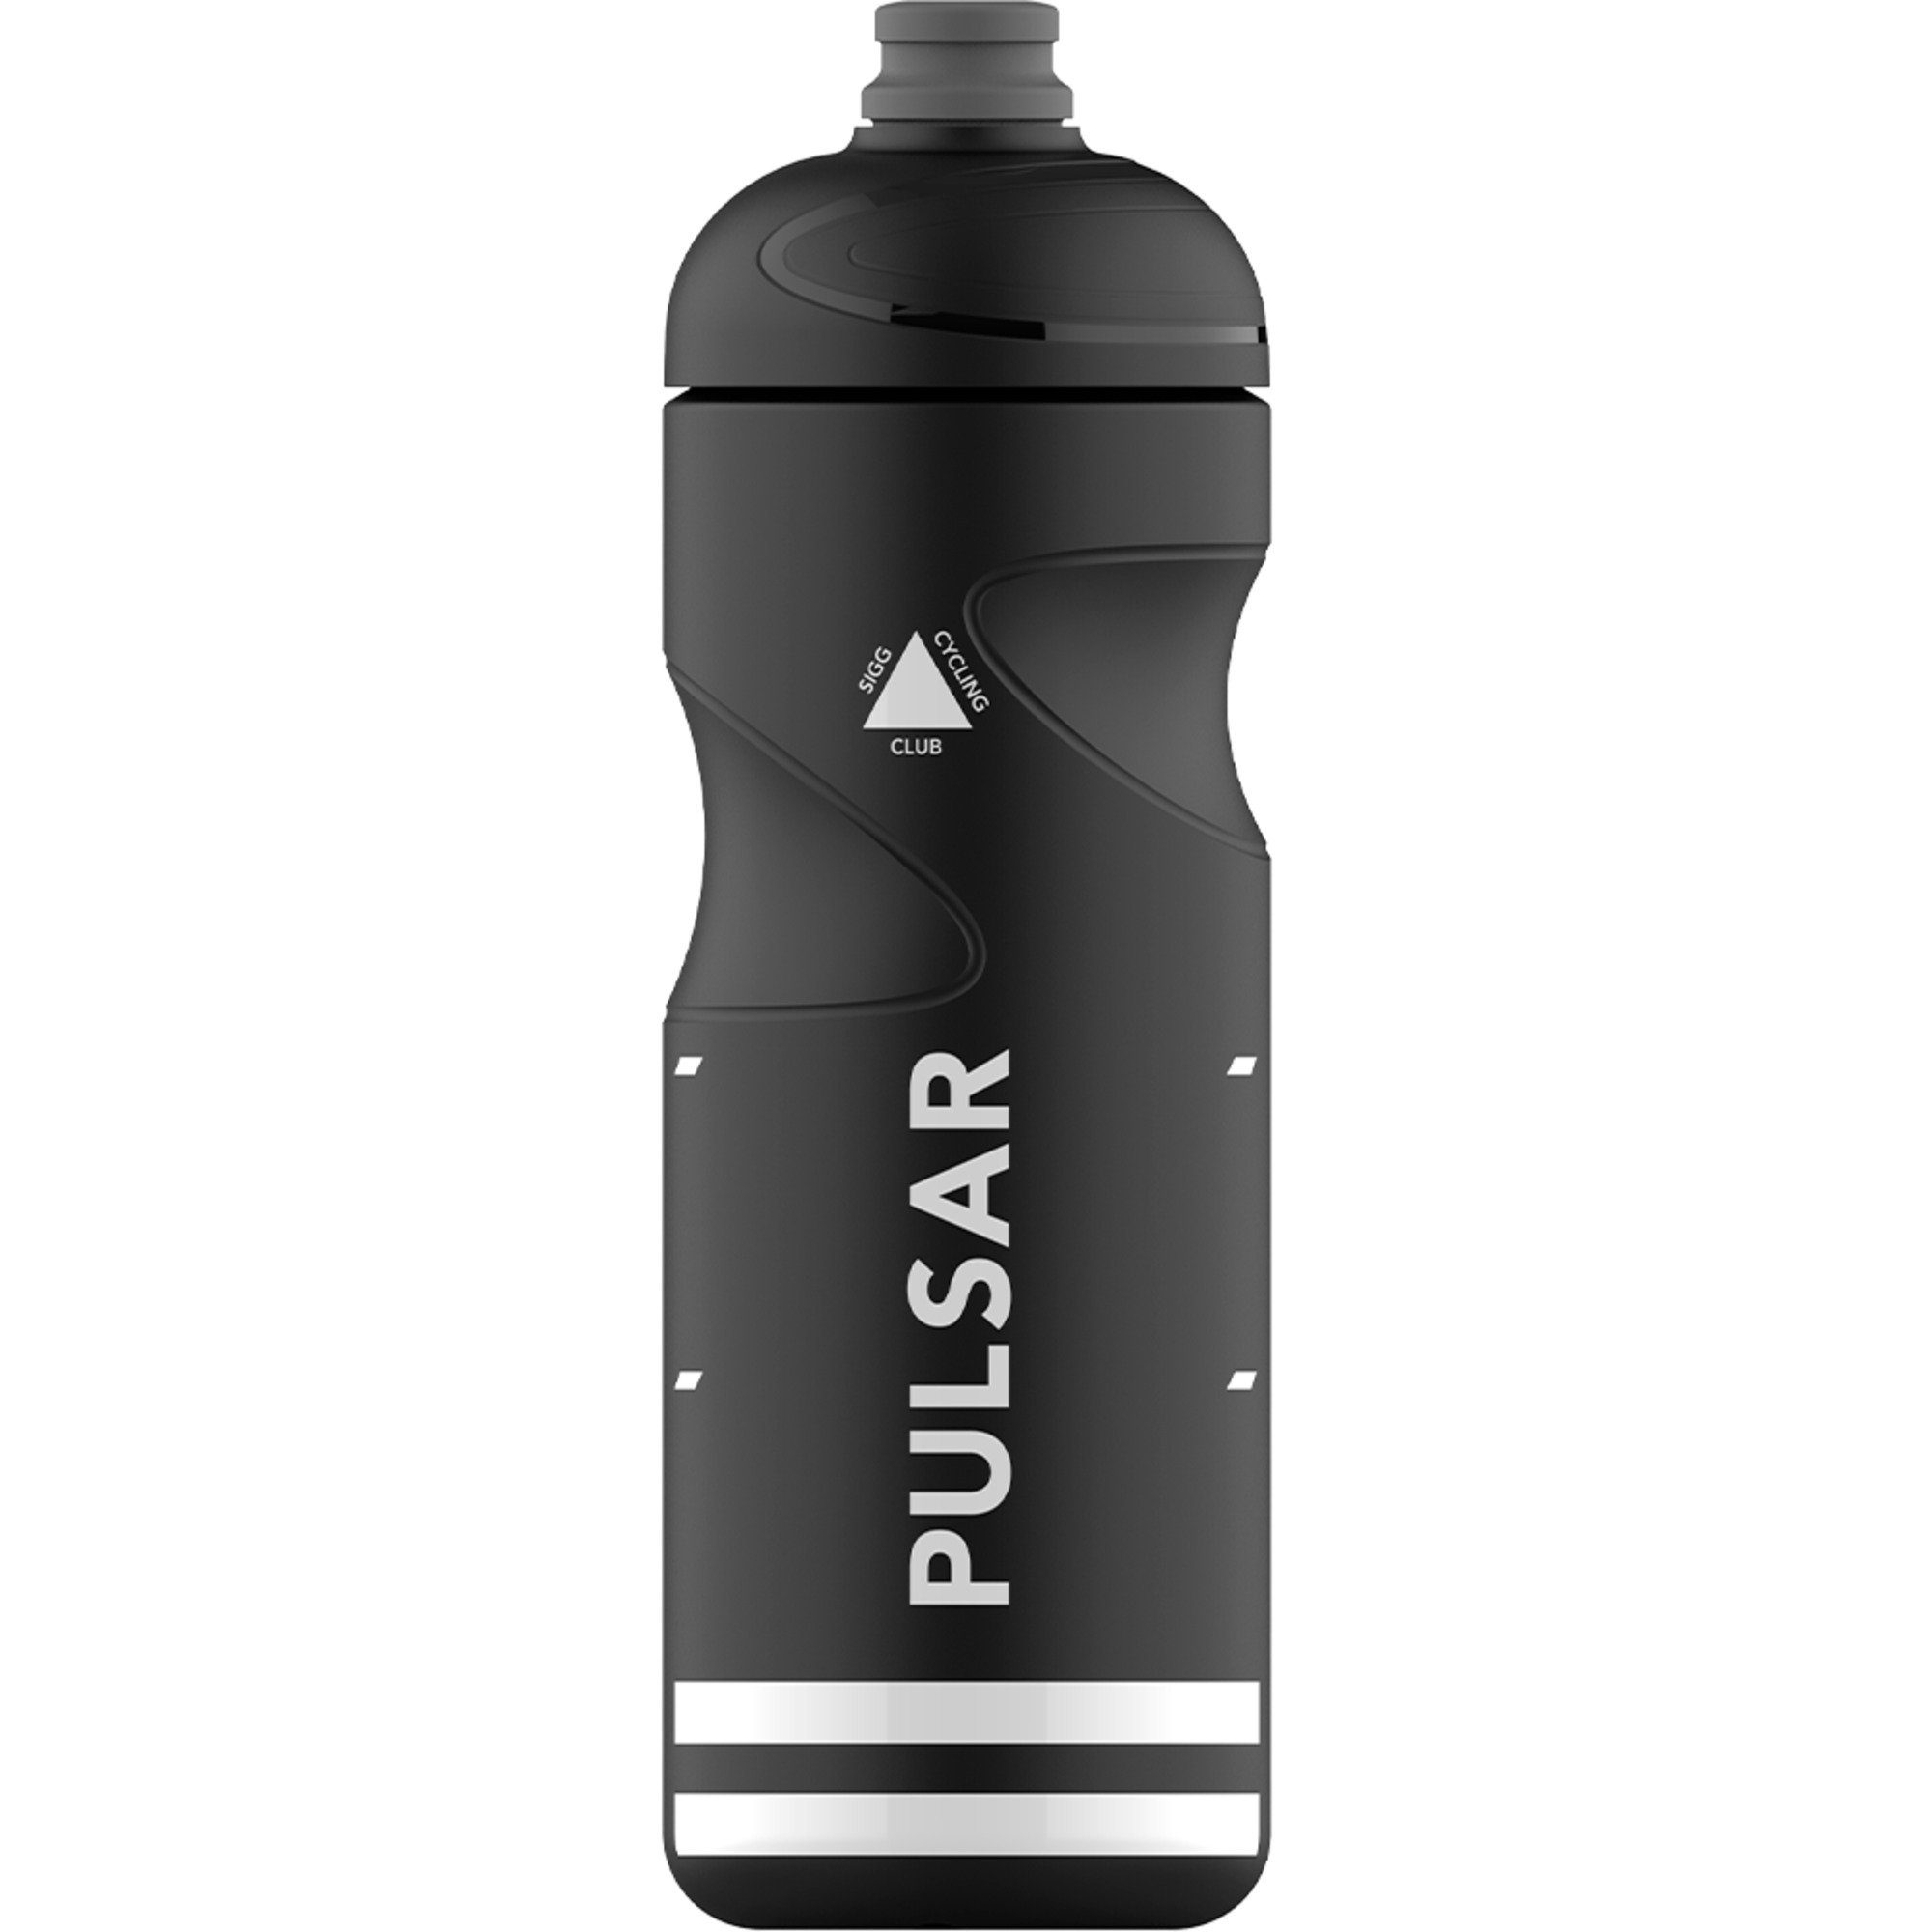 Sigg Trinkflasche SIGG 0,75L Black Pulsar Trinkflasche